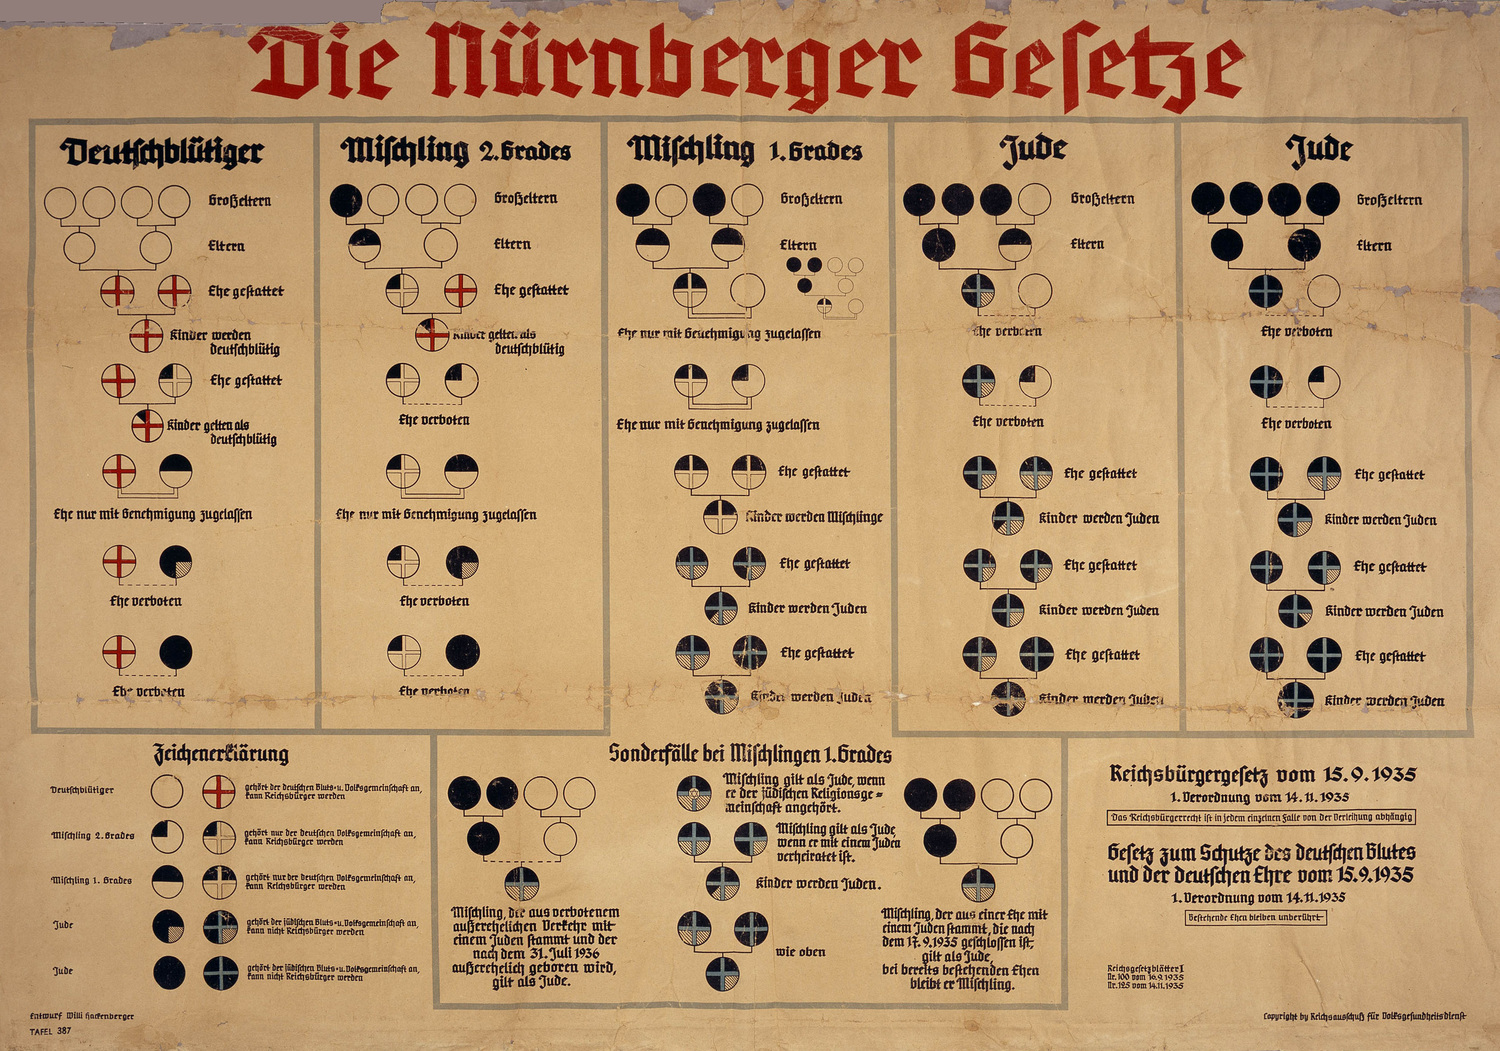 Nuremberg laws.jpg